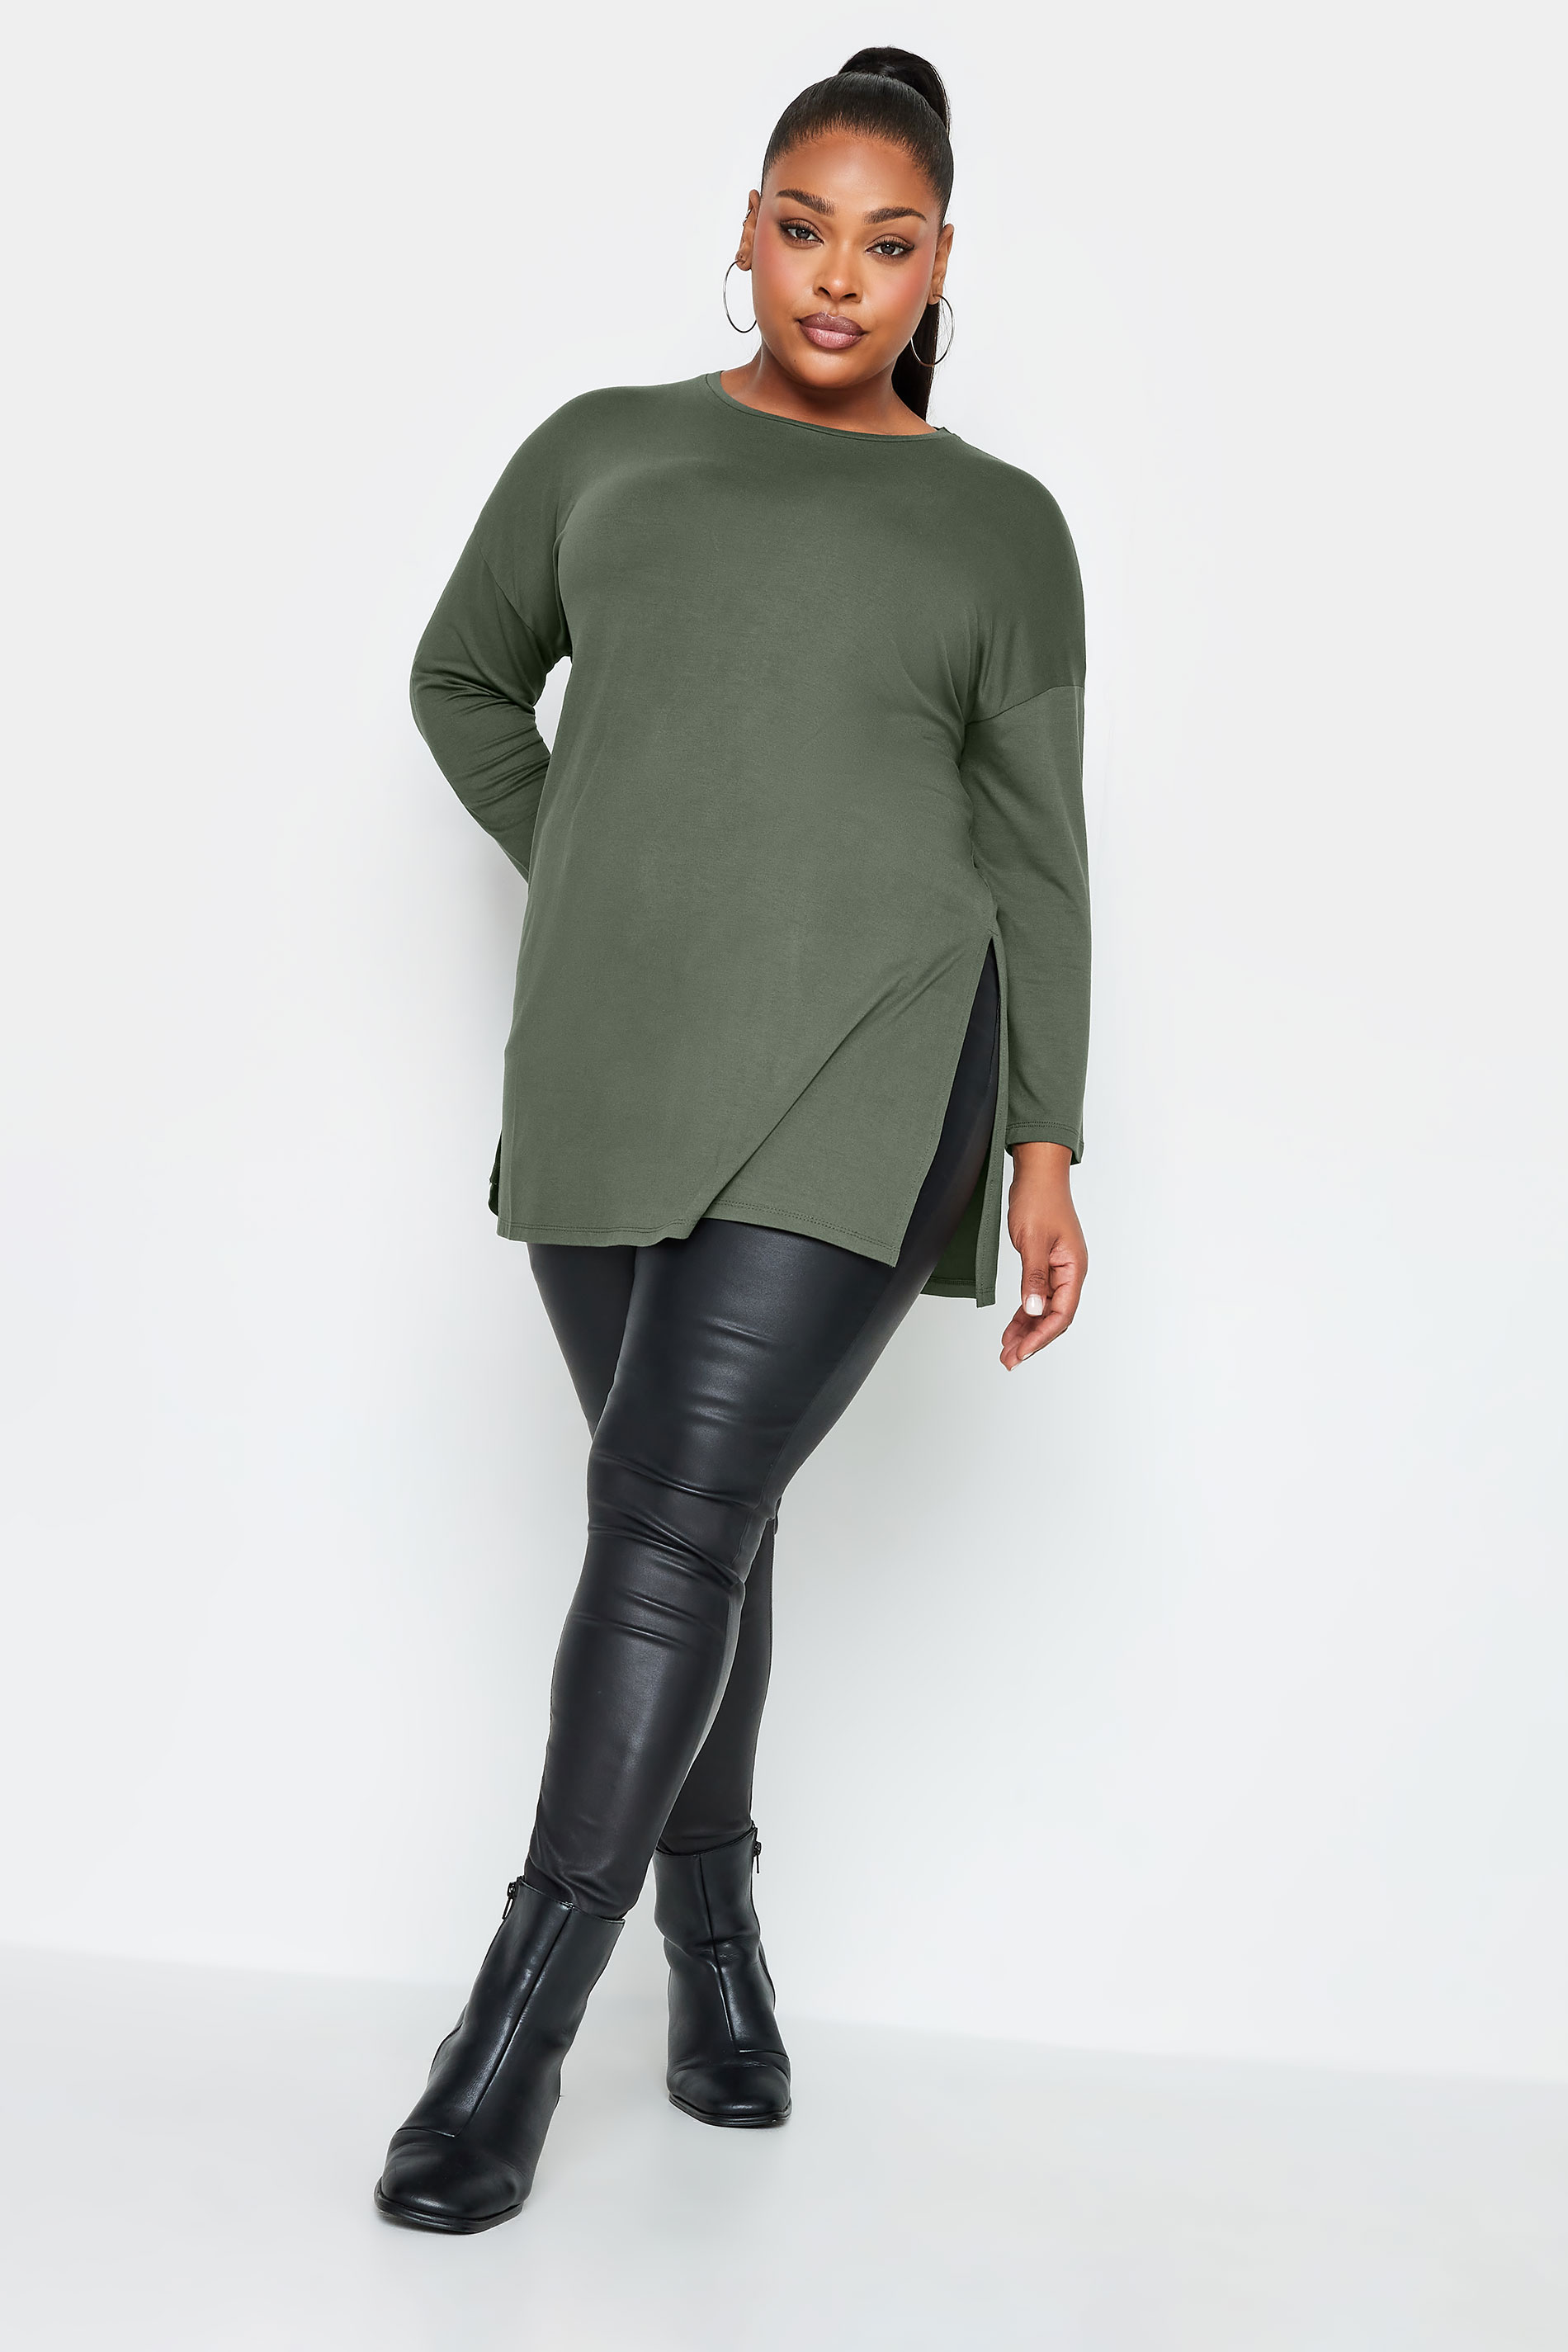 YOURS Plus Size Khaki Green Oversized Long Sleeve T-Shirt | Yours Clothing 2